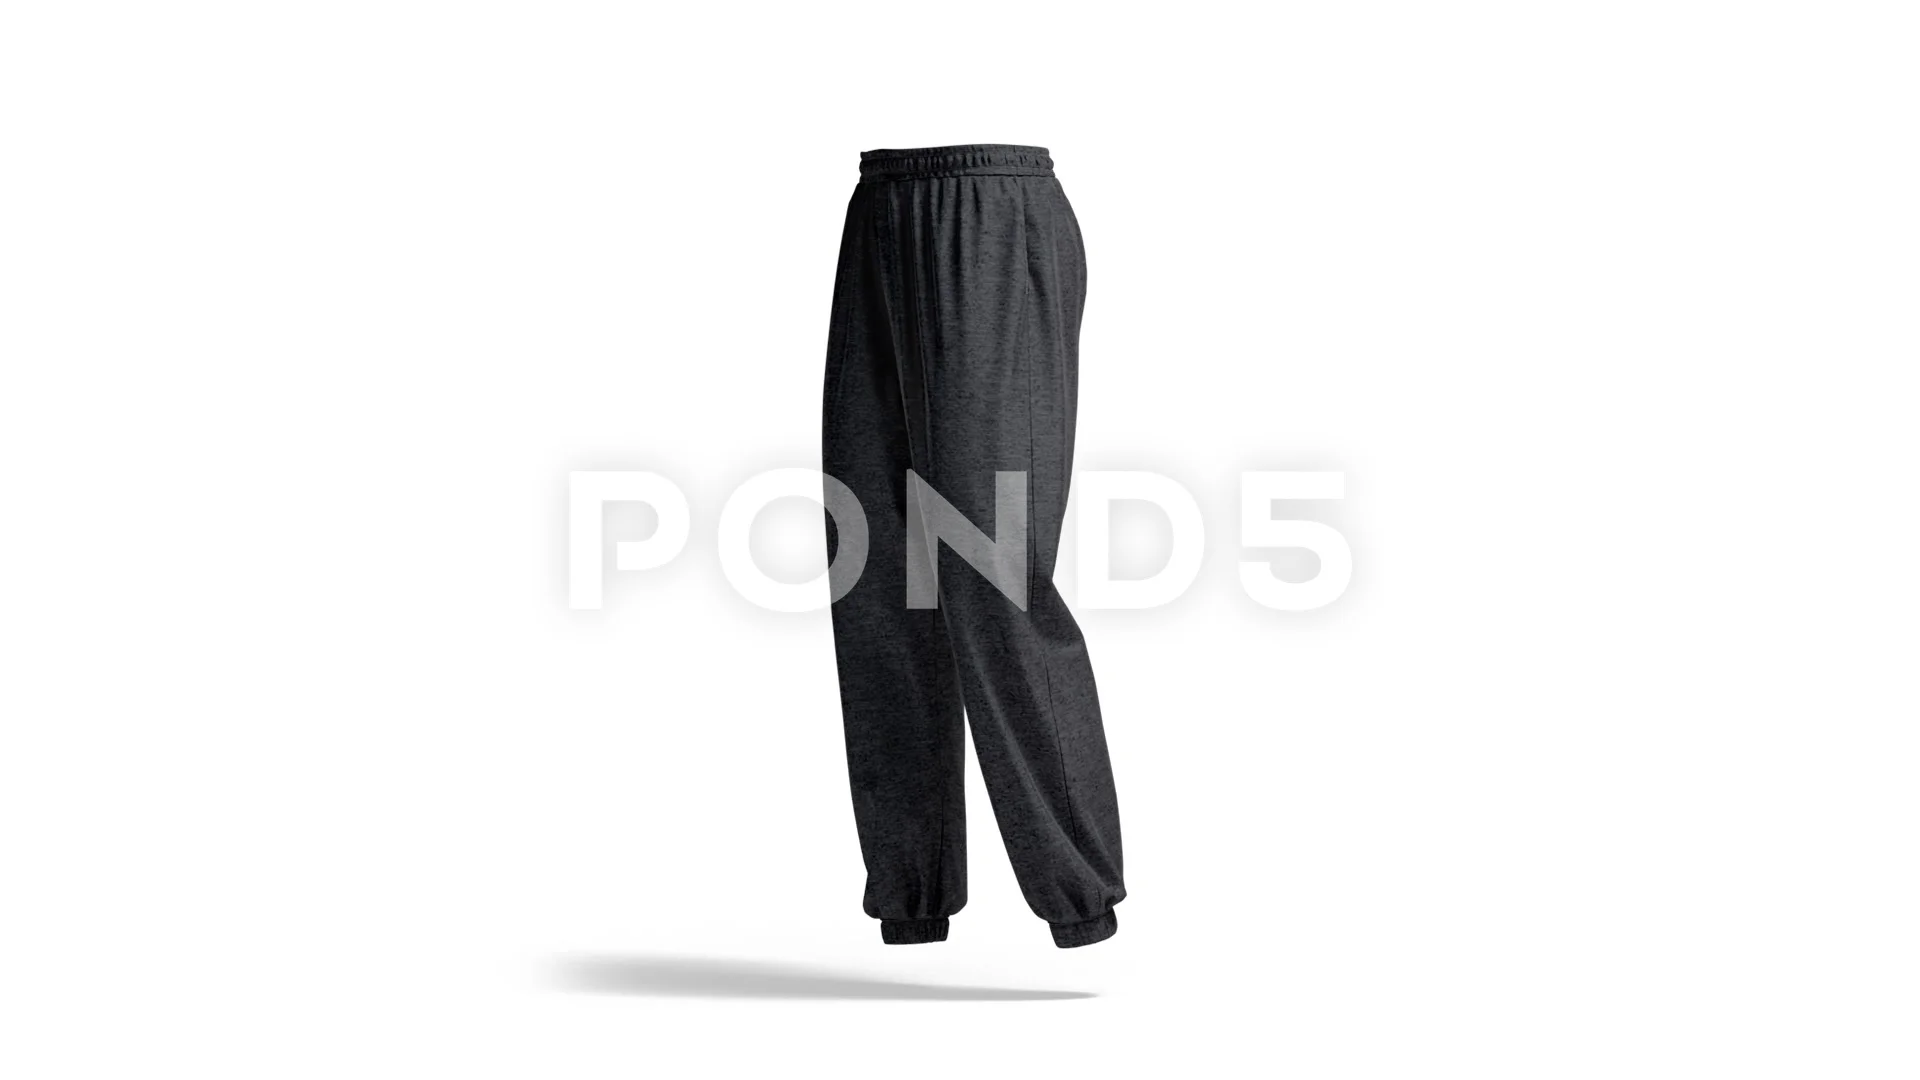 https://images.pond5.com/blank-black-sport-sweatpants-mock-footage-163211291_prevstill.jpeg